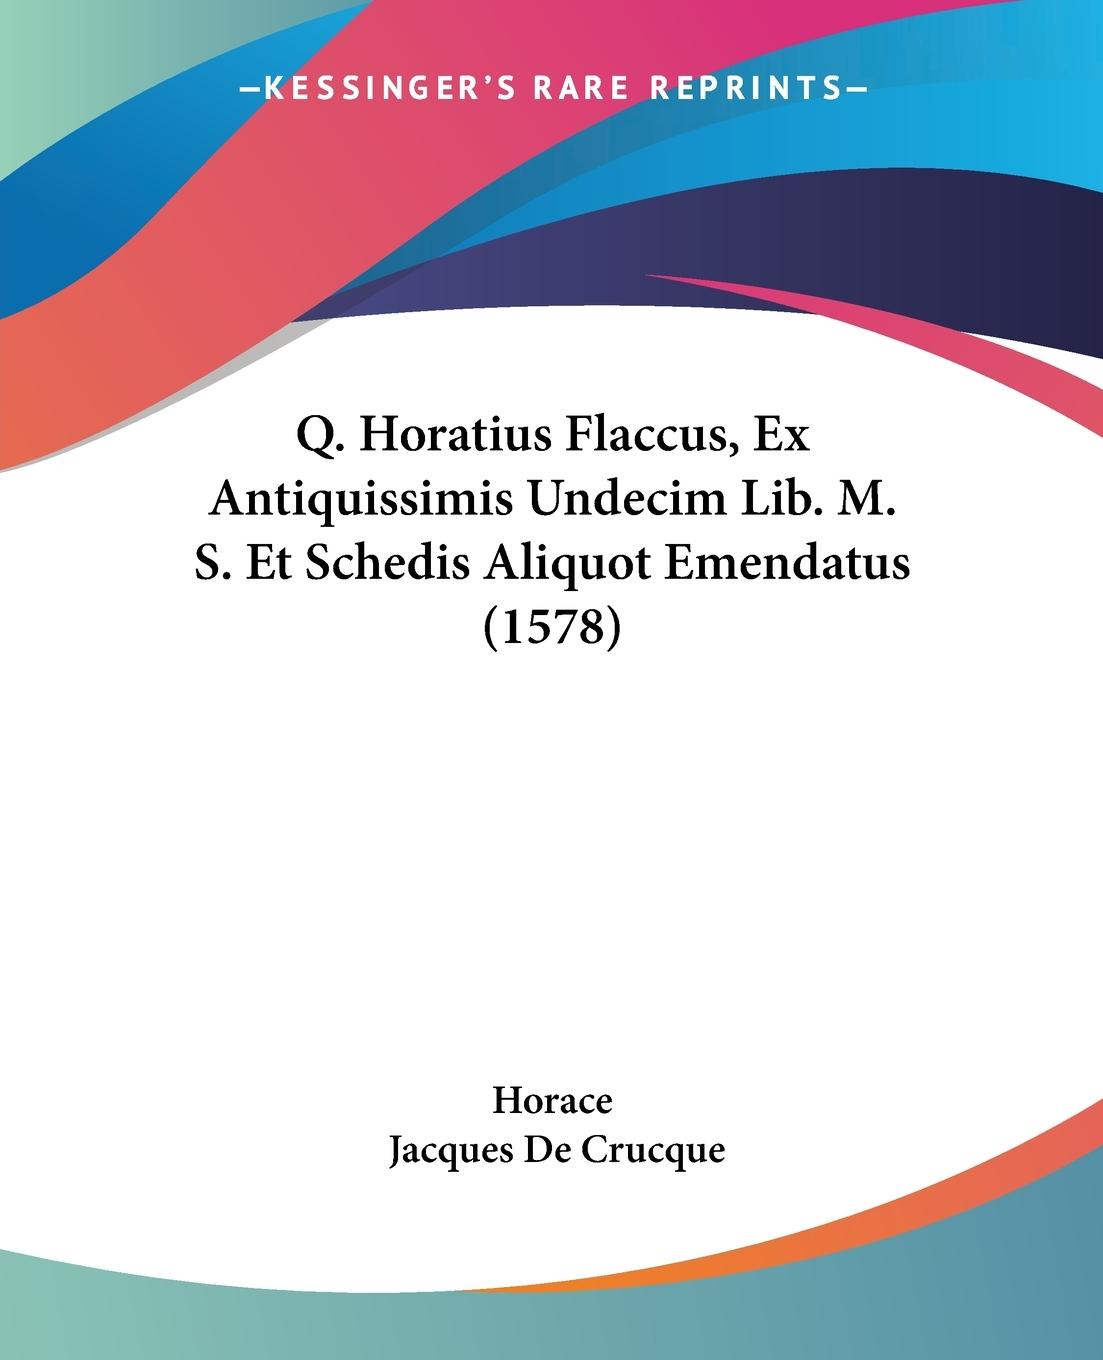 Q. Horatius Flaccus, Ex Antiquissimis Undecim Lib. M. S. Et Schedis Aliquot Emendatus (1578) - Horace